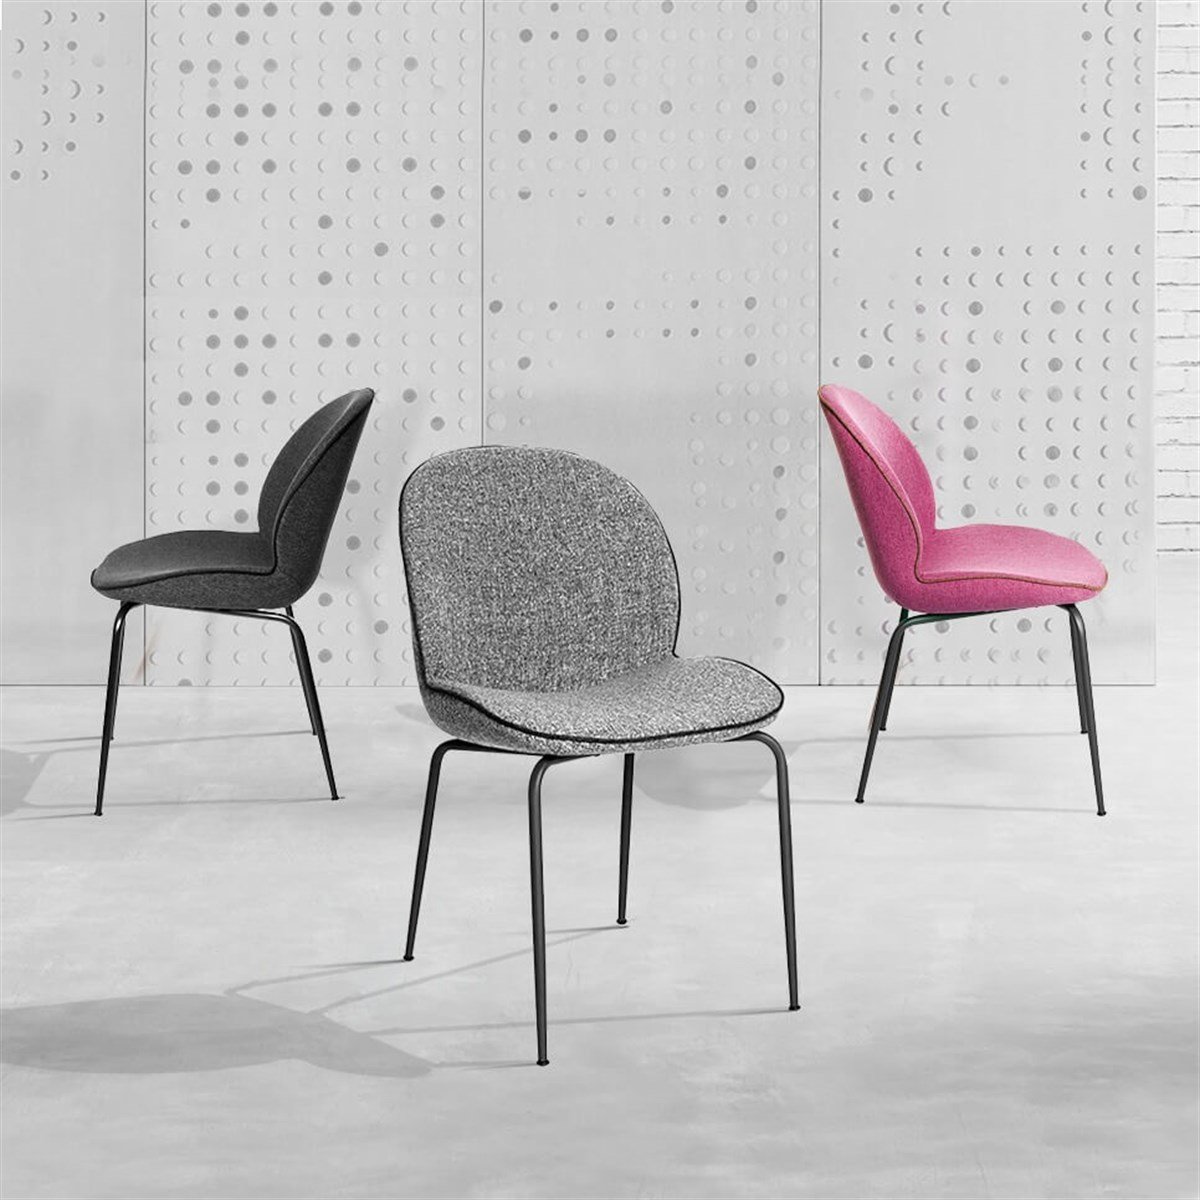 Sandalye Modelleri | Mutfak Sandalyeleri | Ofis Sandalyeleri